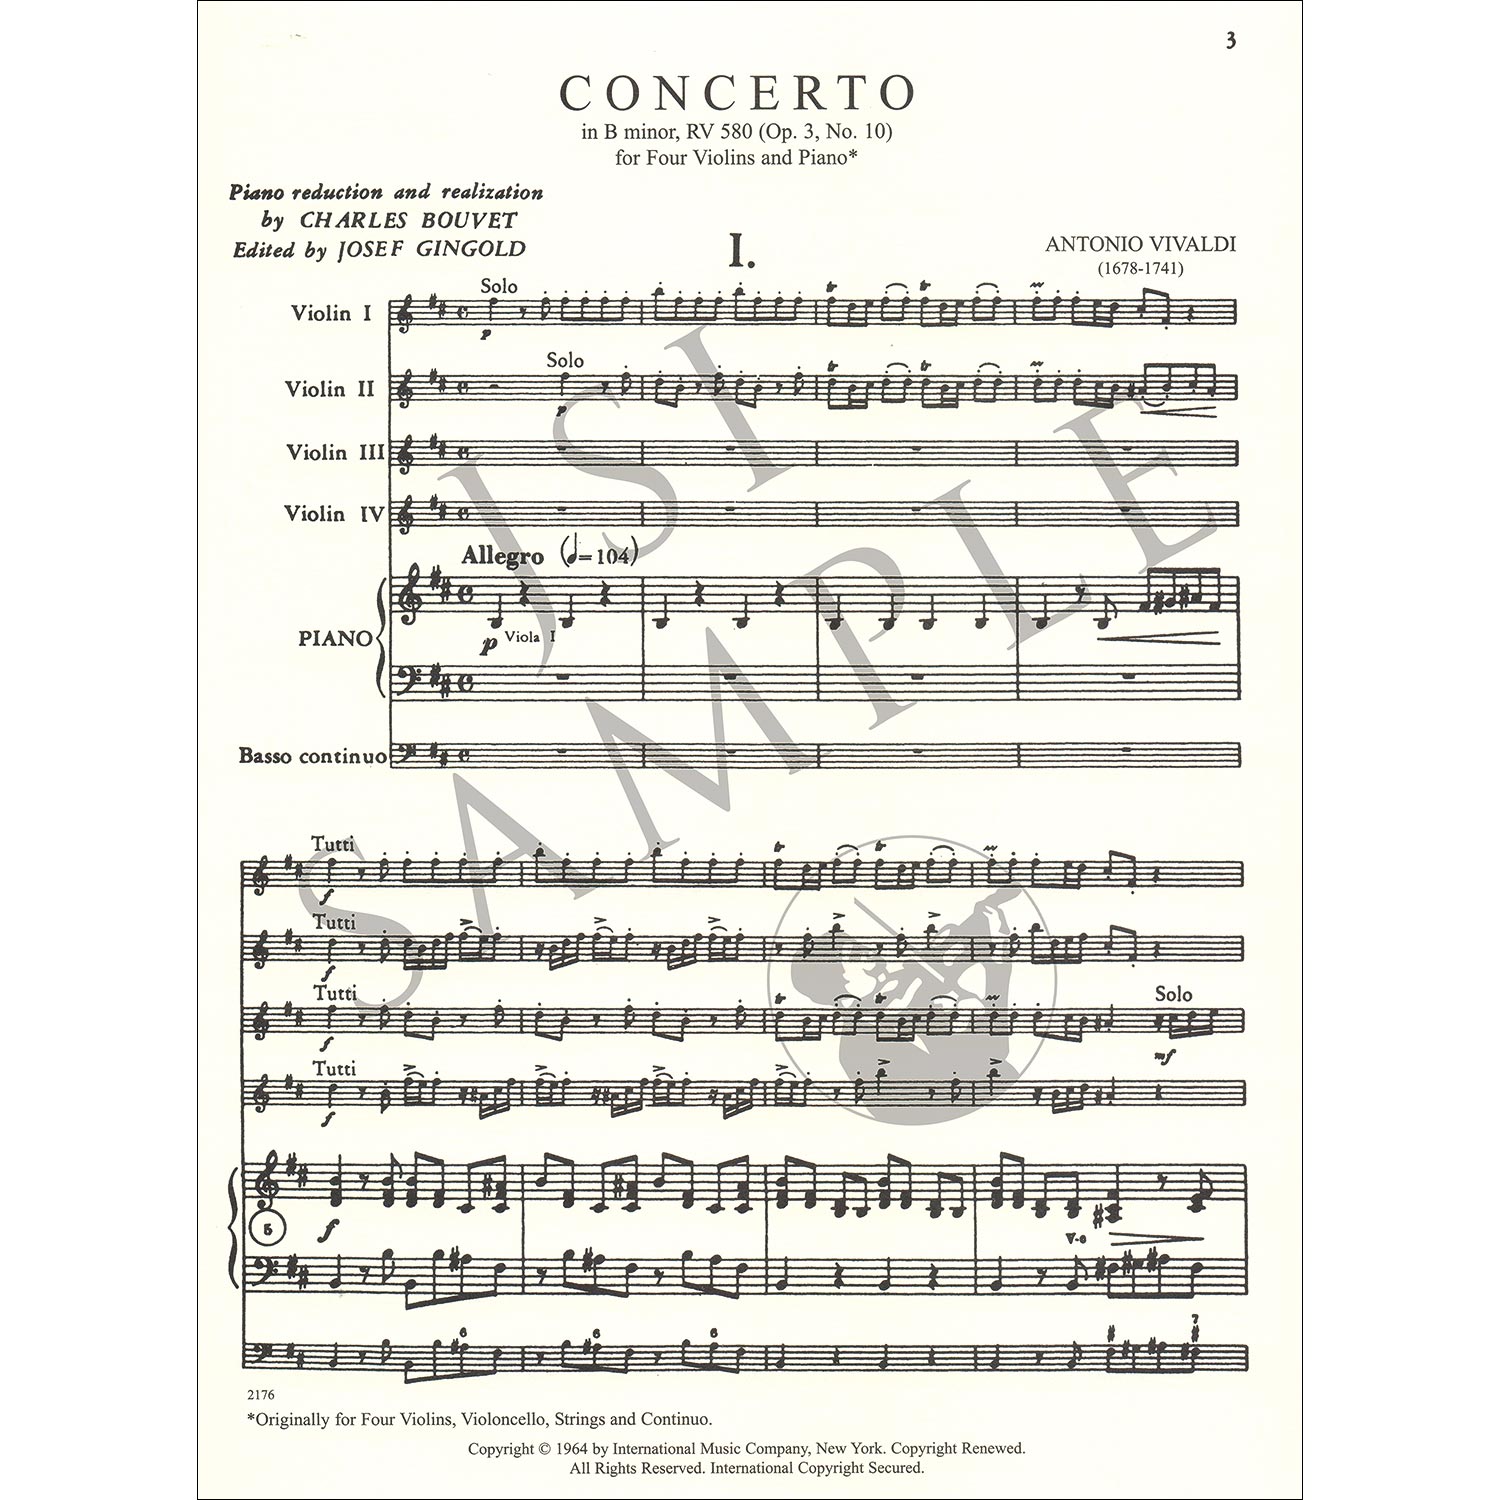 Concerto in B Minor, Op.3 No. 10, RV 580, 4 violins; Antonio Vivaldi Johnson String Instrument